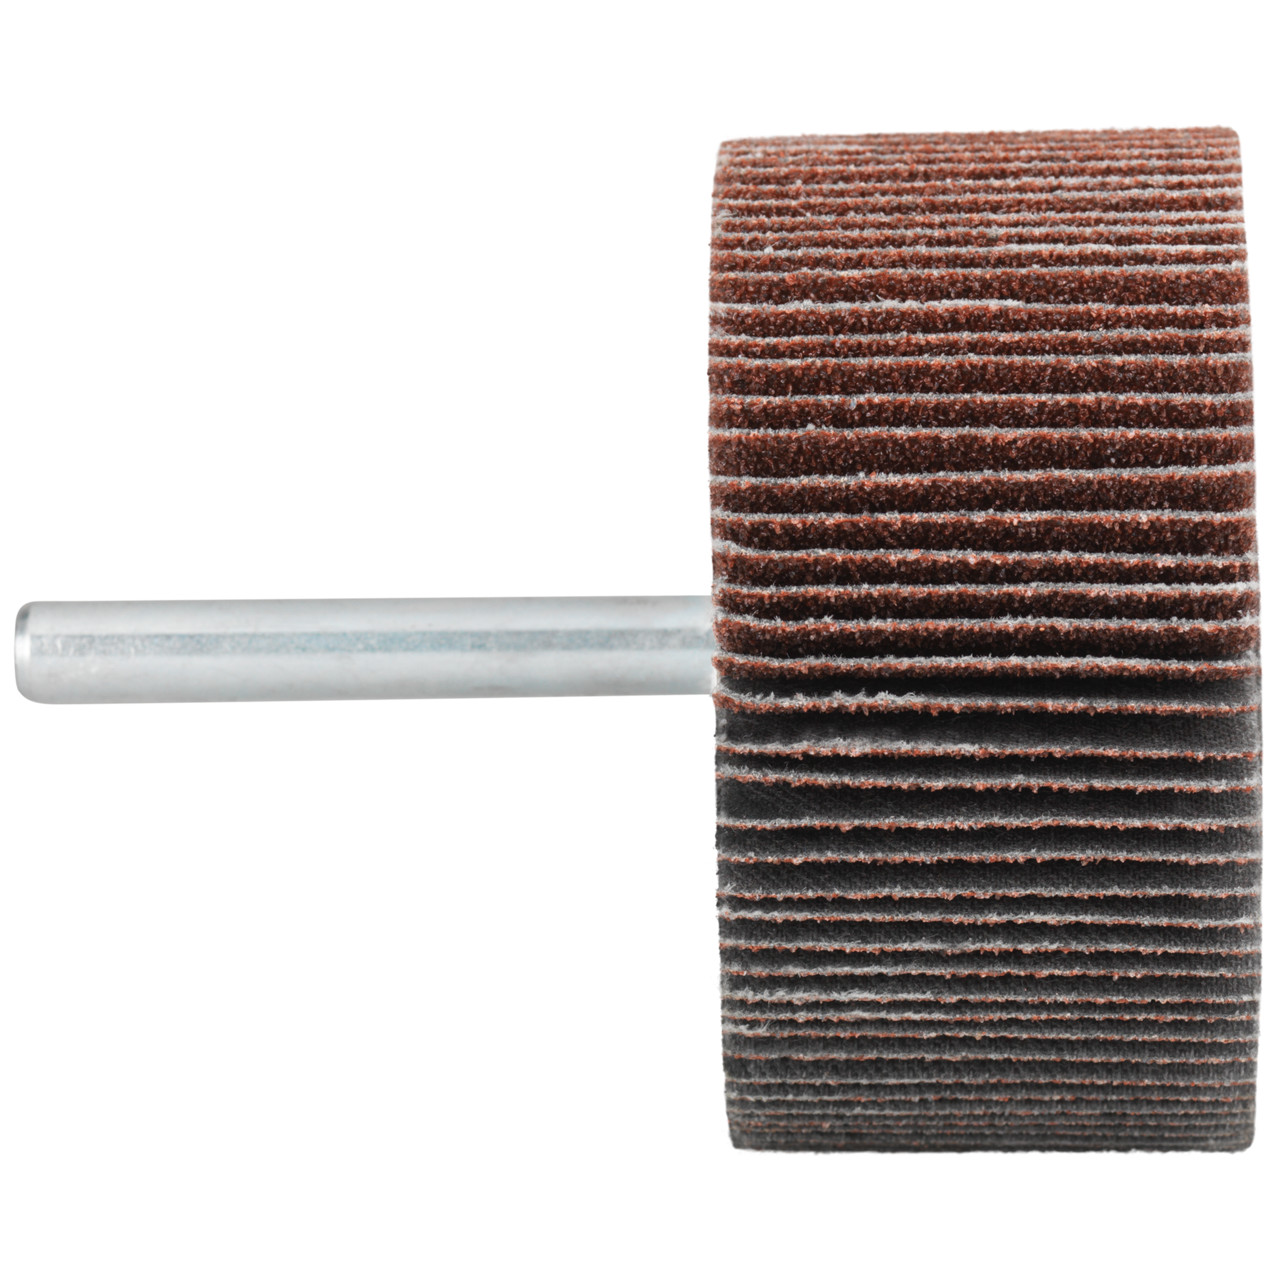 Tyrolit A-P01 C X Pennen DxD 10x10 Voor staal, roestvast staal en non-ferrometalen, P120, vorm: 52LA, Art. 909385